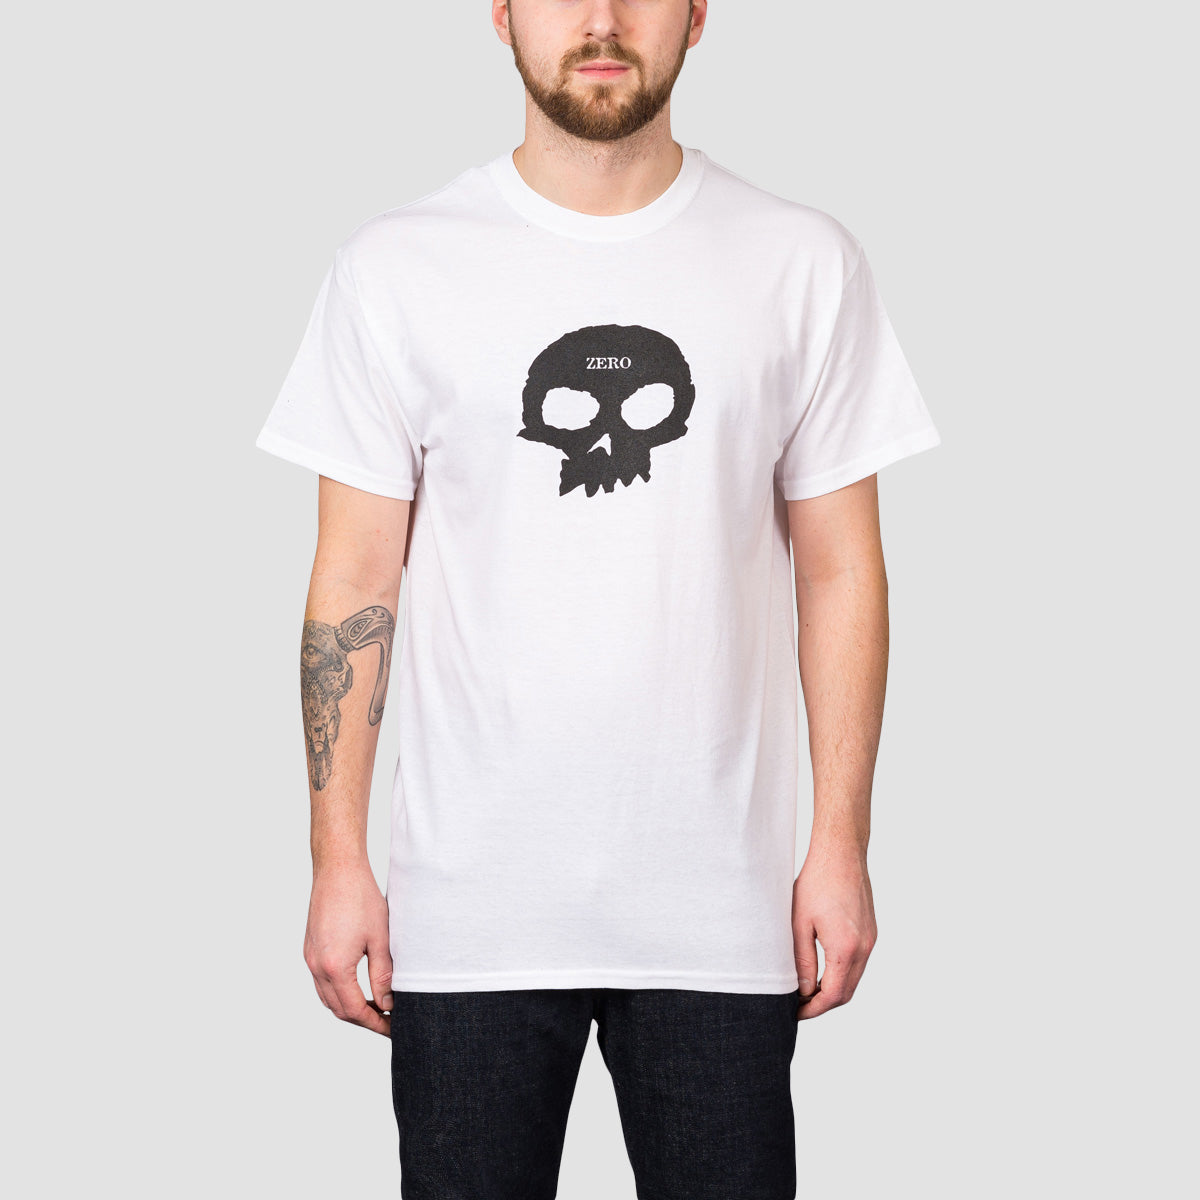 Zero Single Skull T-Shirt White/Black